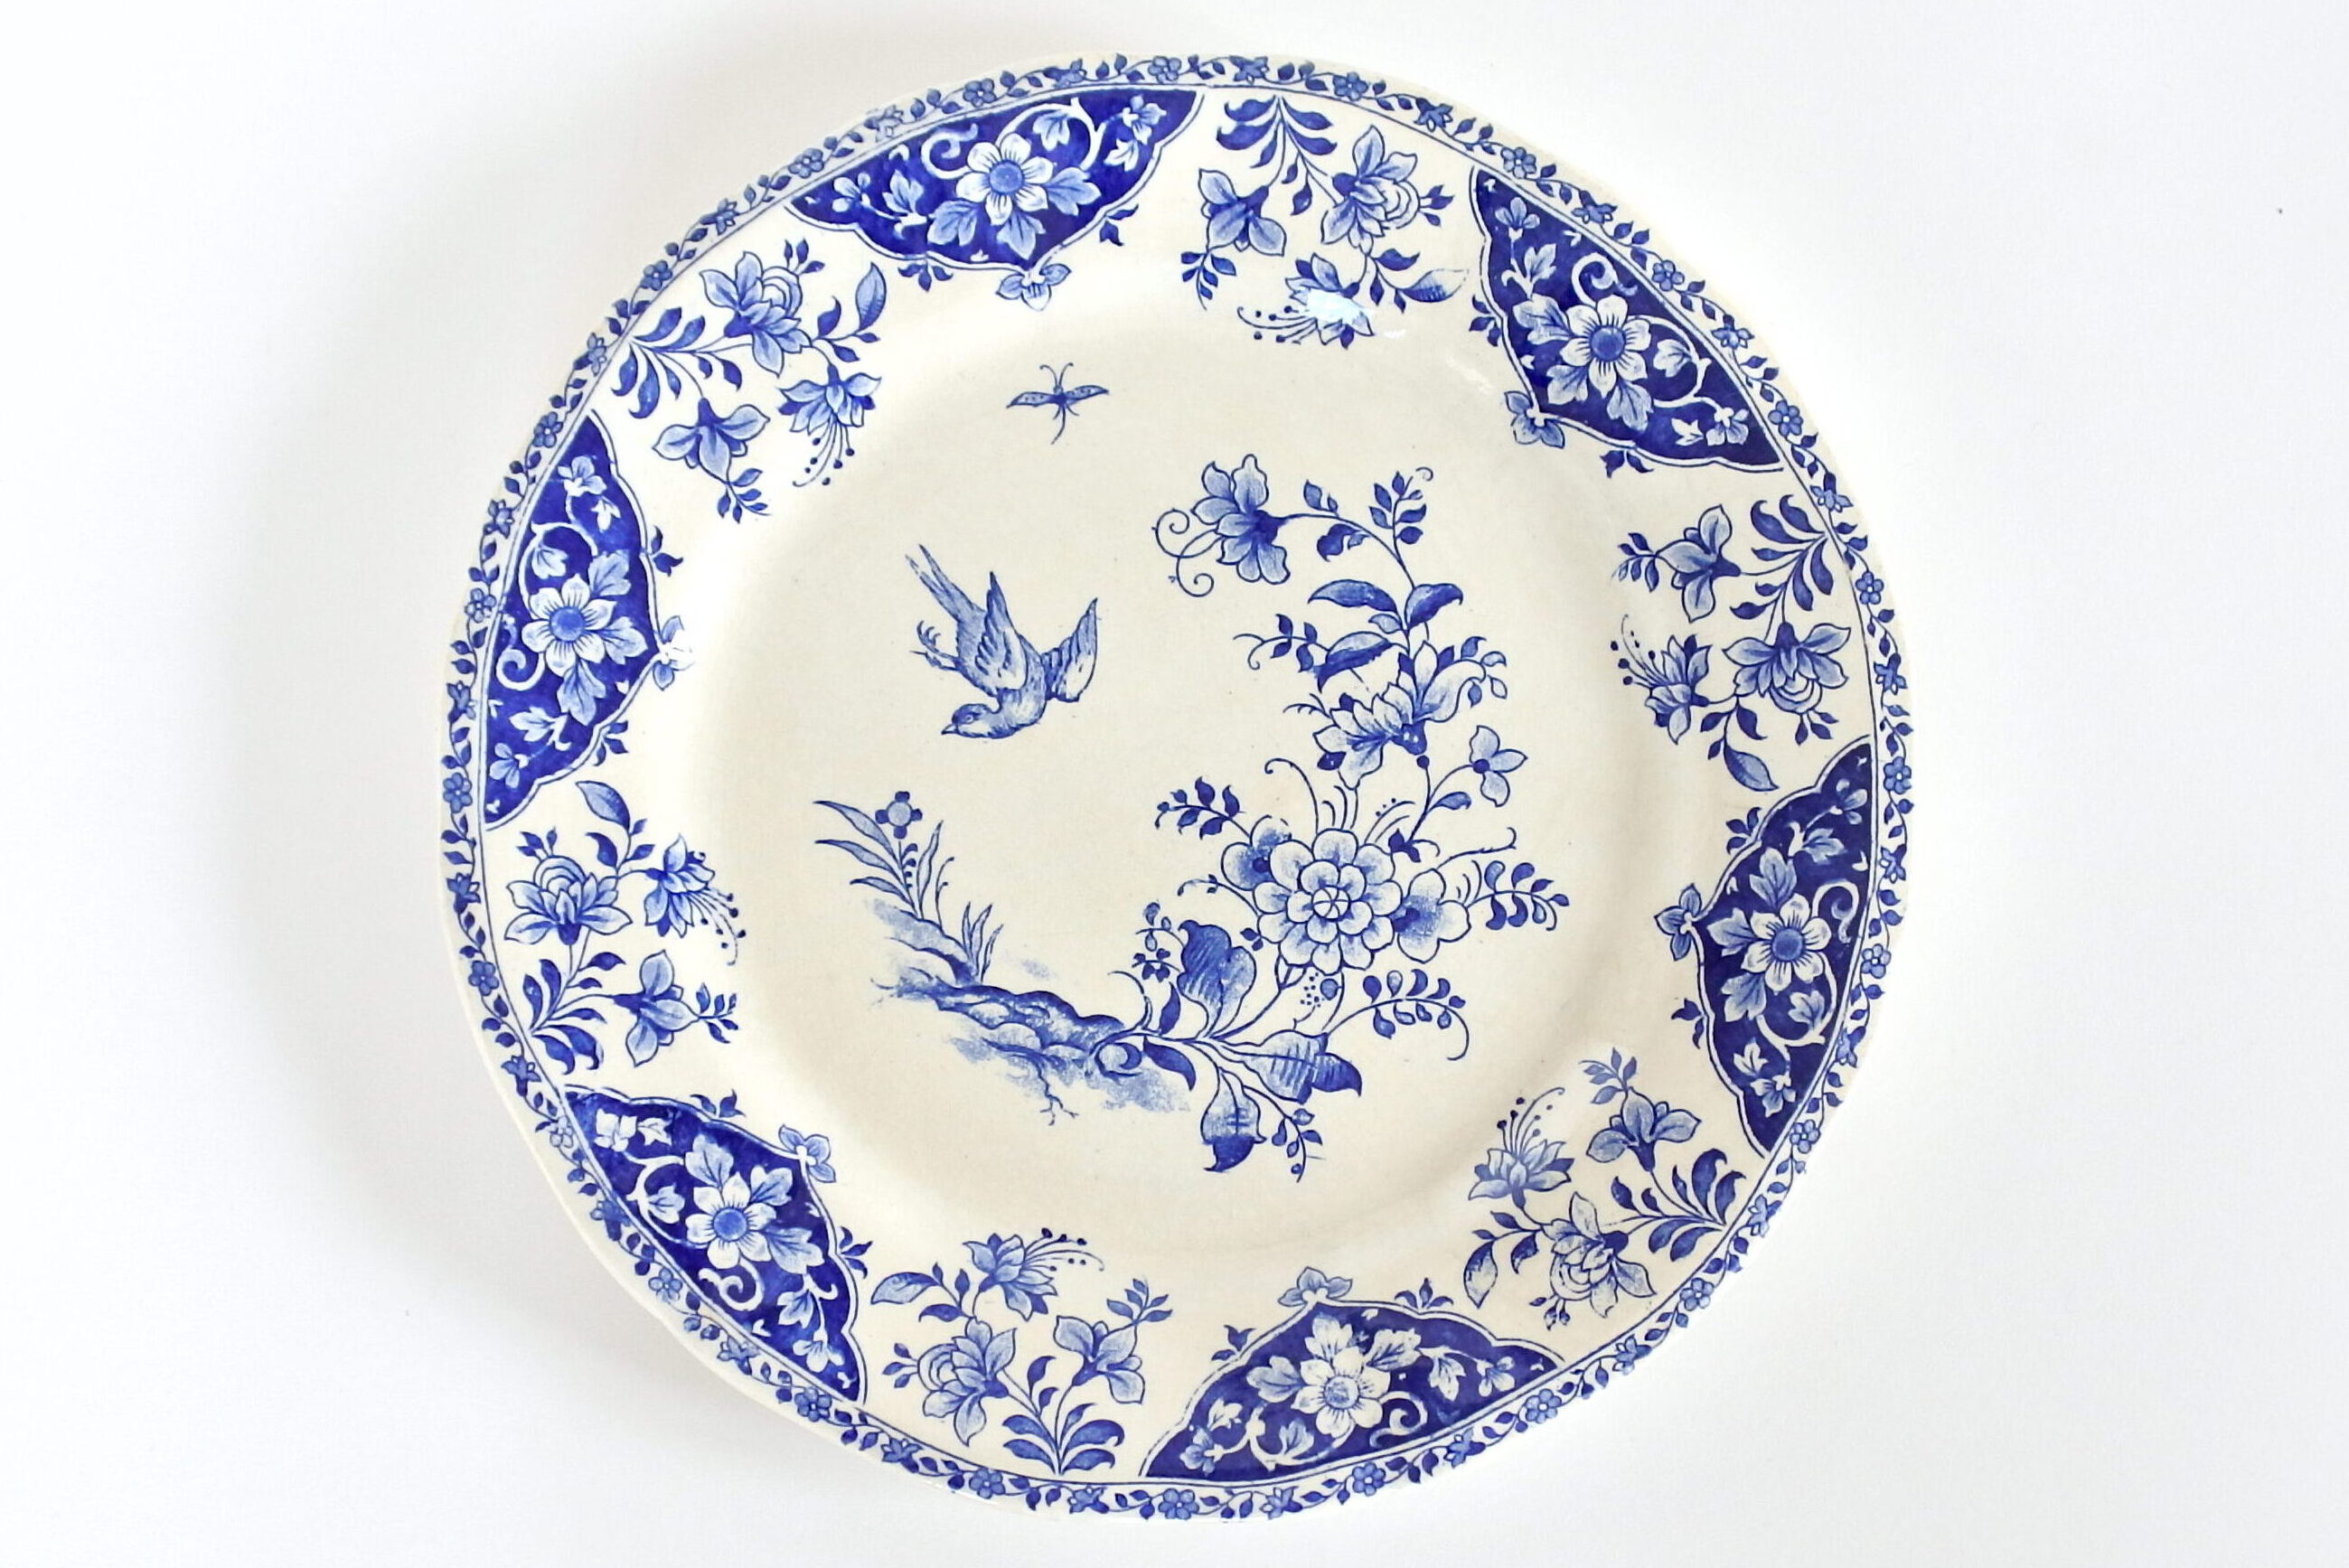 Piatti in porcellana con bordo pizzicato a mano, stoviglie, piatti bianchi,  ceramica -  Italia